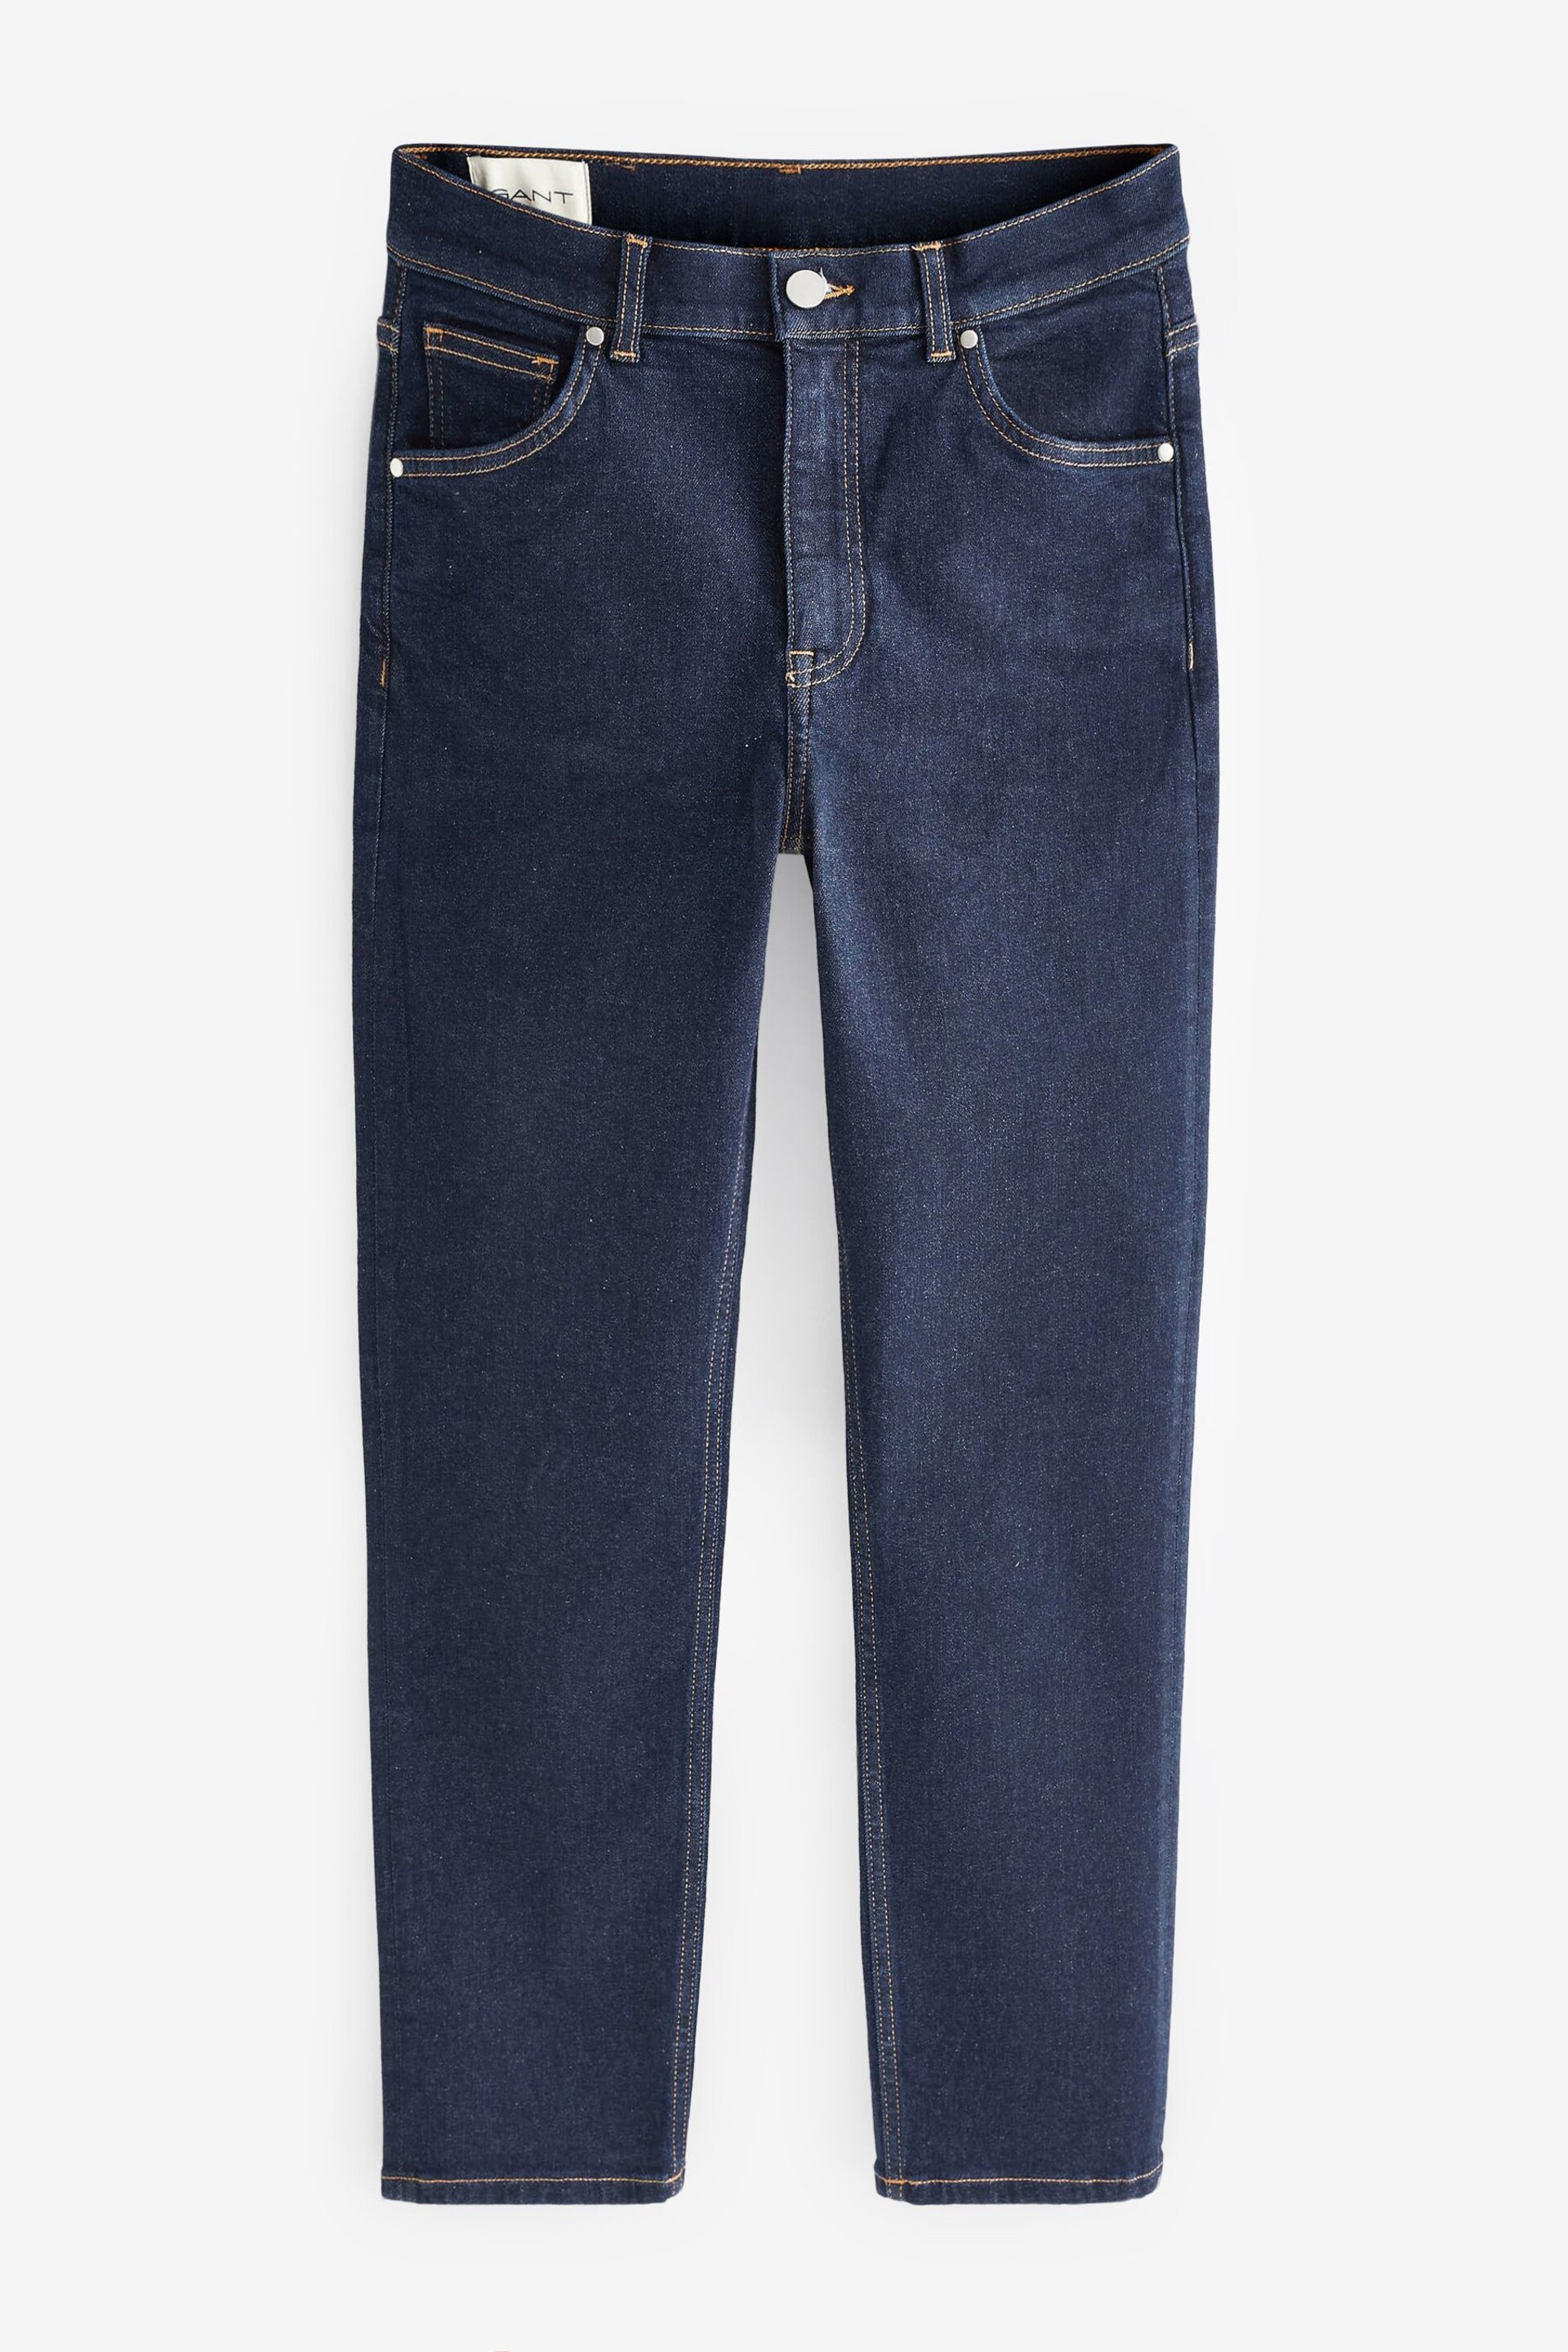 GANT Blue Ankle Length Slim Fit Jeans - Image 5 of 5